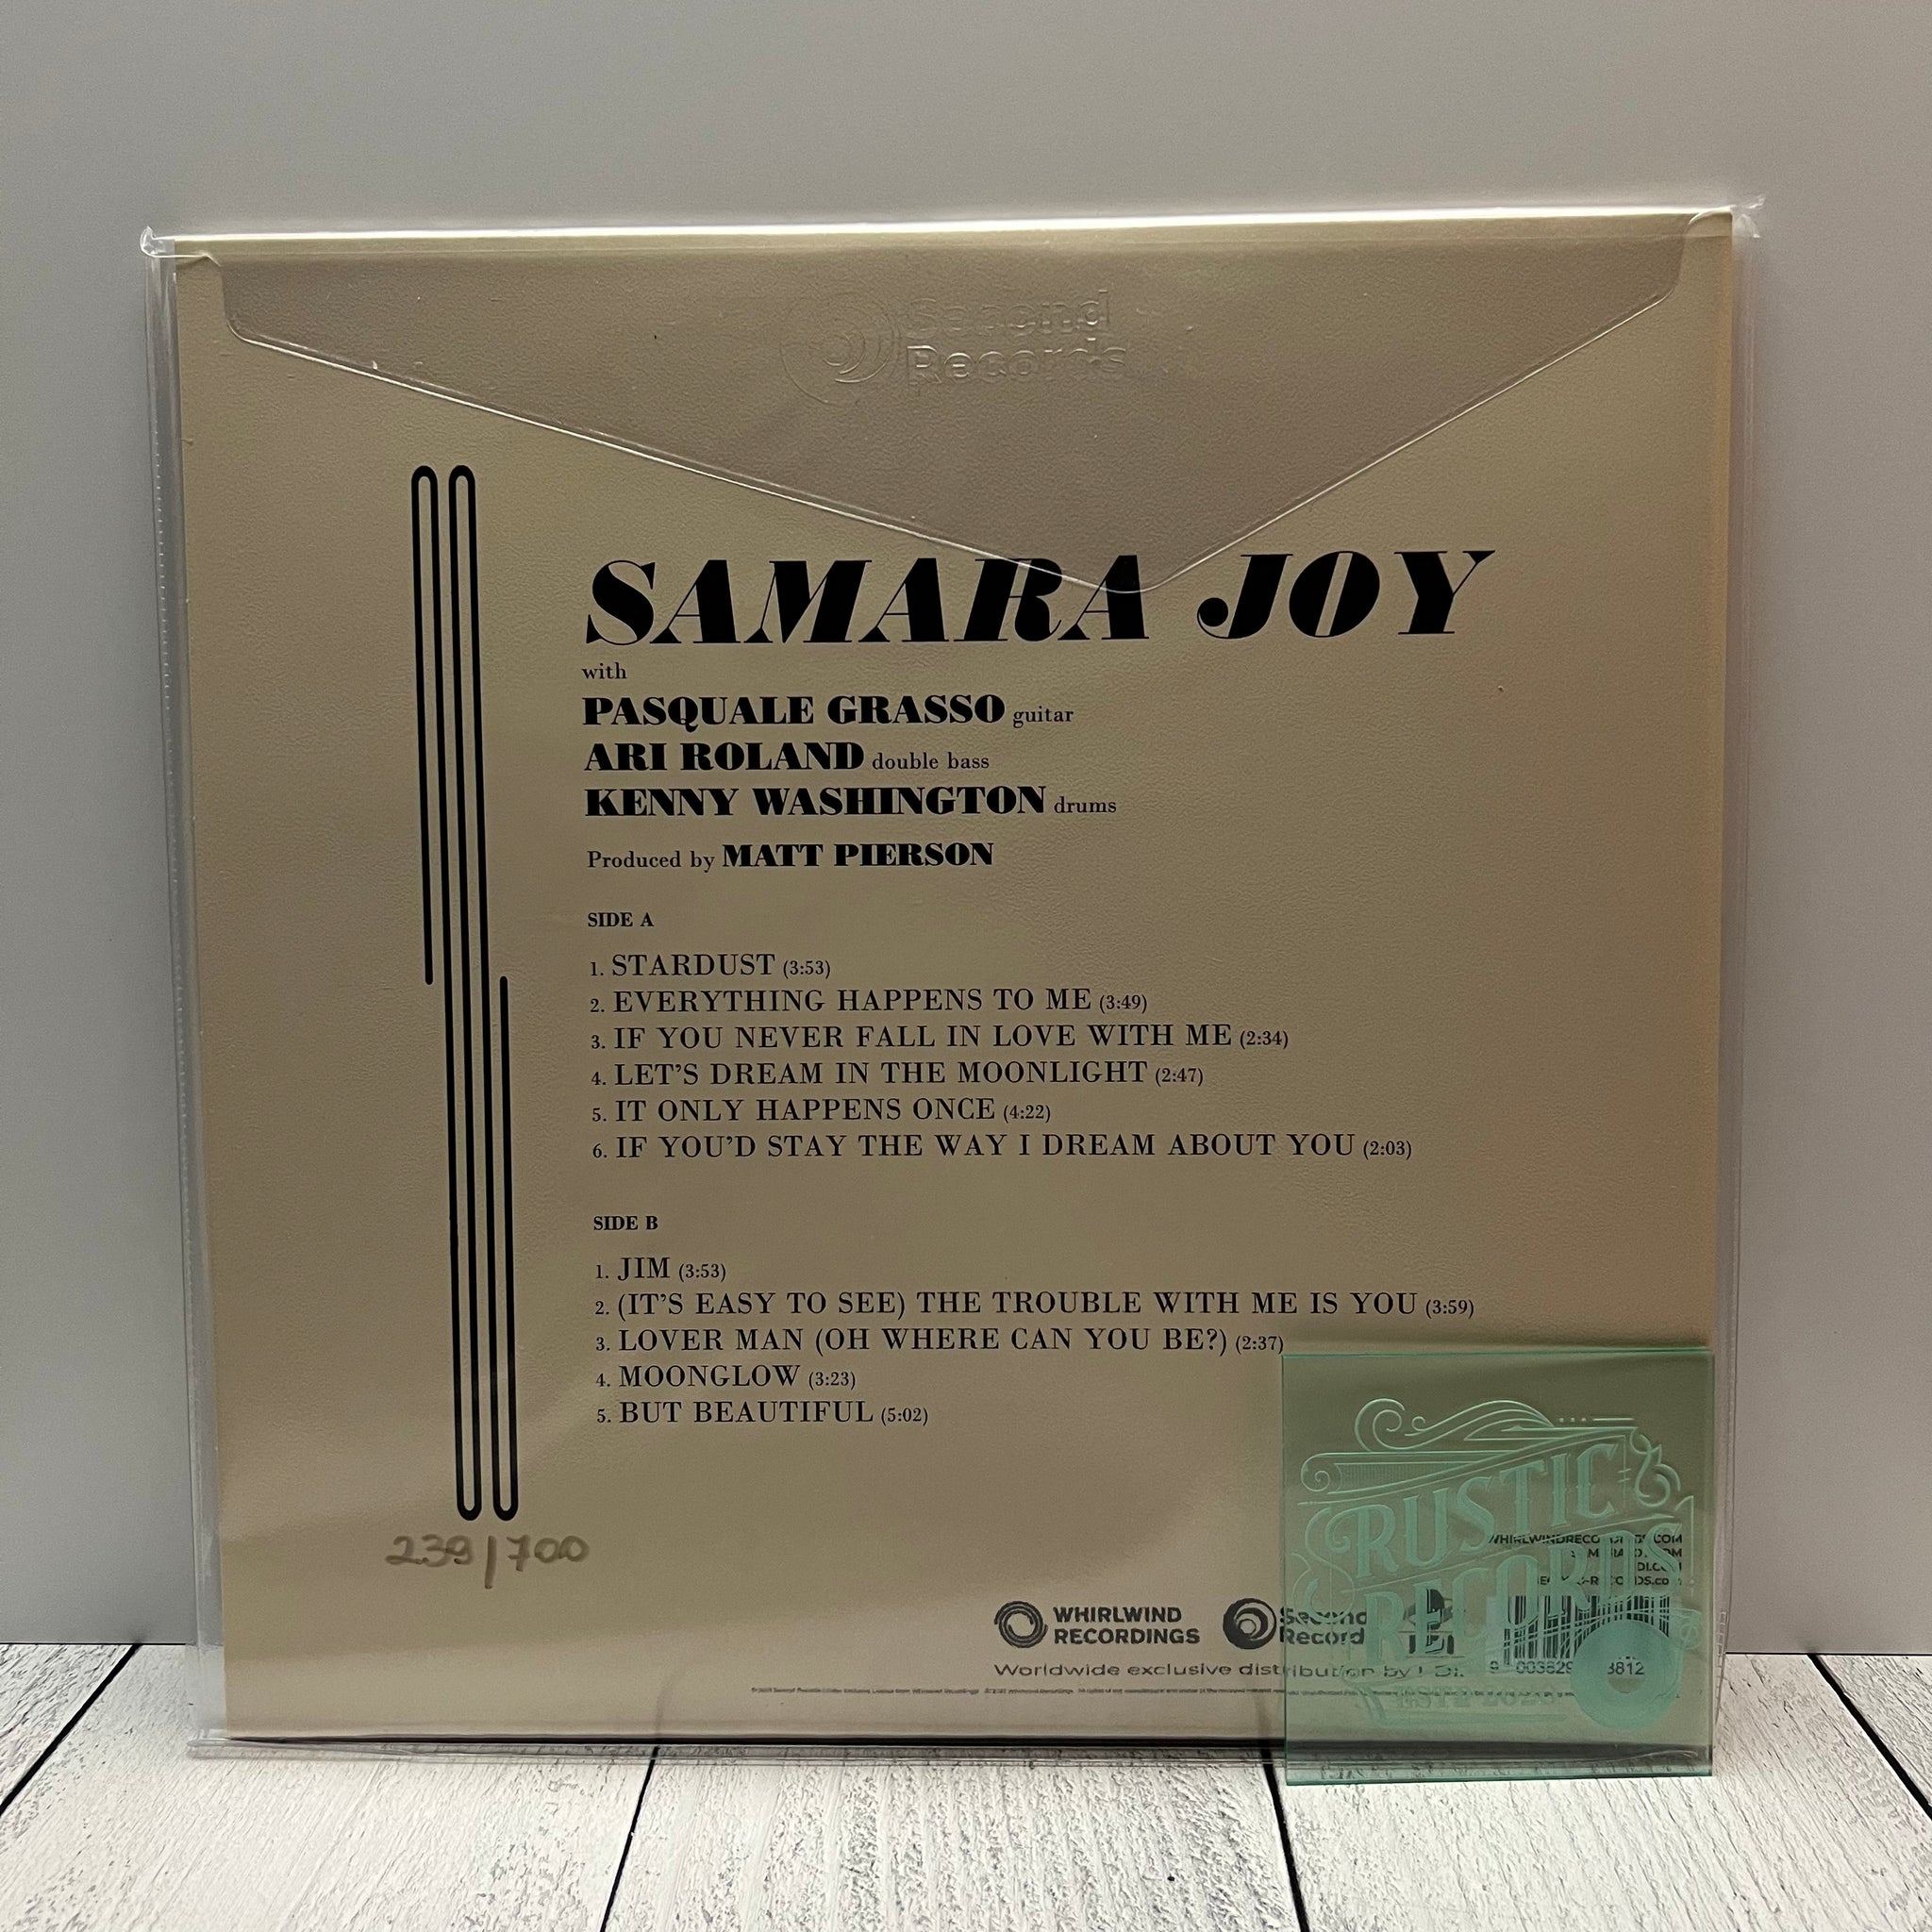 Samara Joy - Samara Joy (Multicolor Splatter)